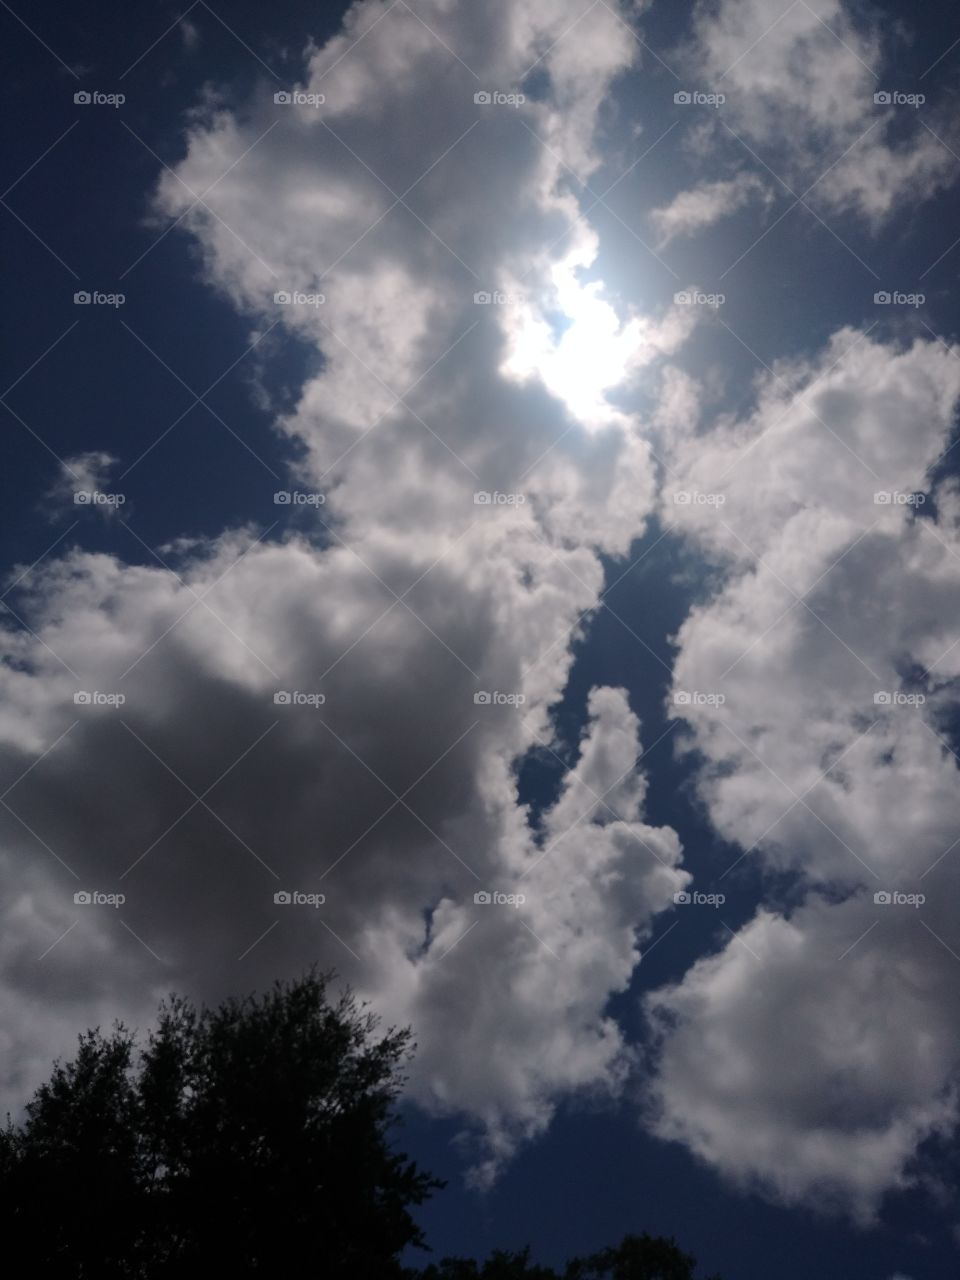 Orlando sky cloudy with the sun